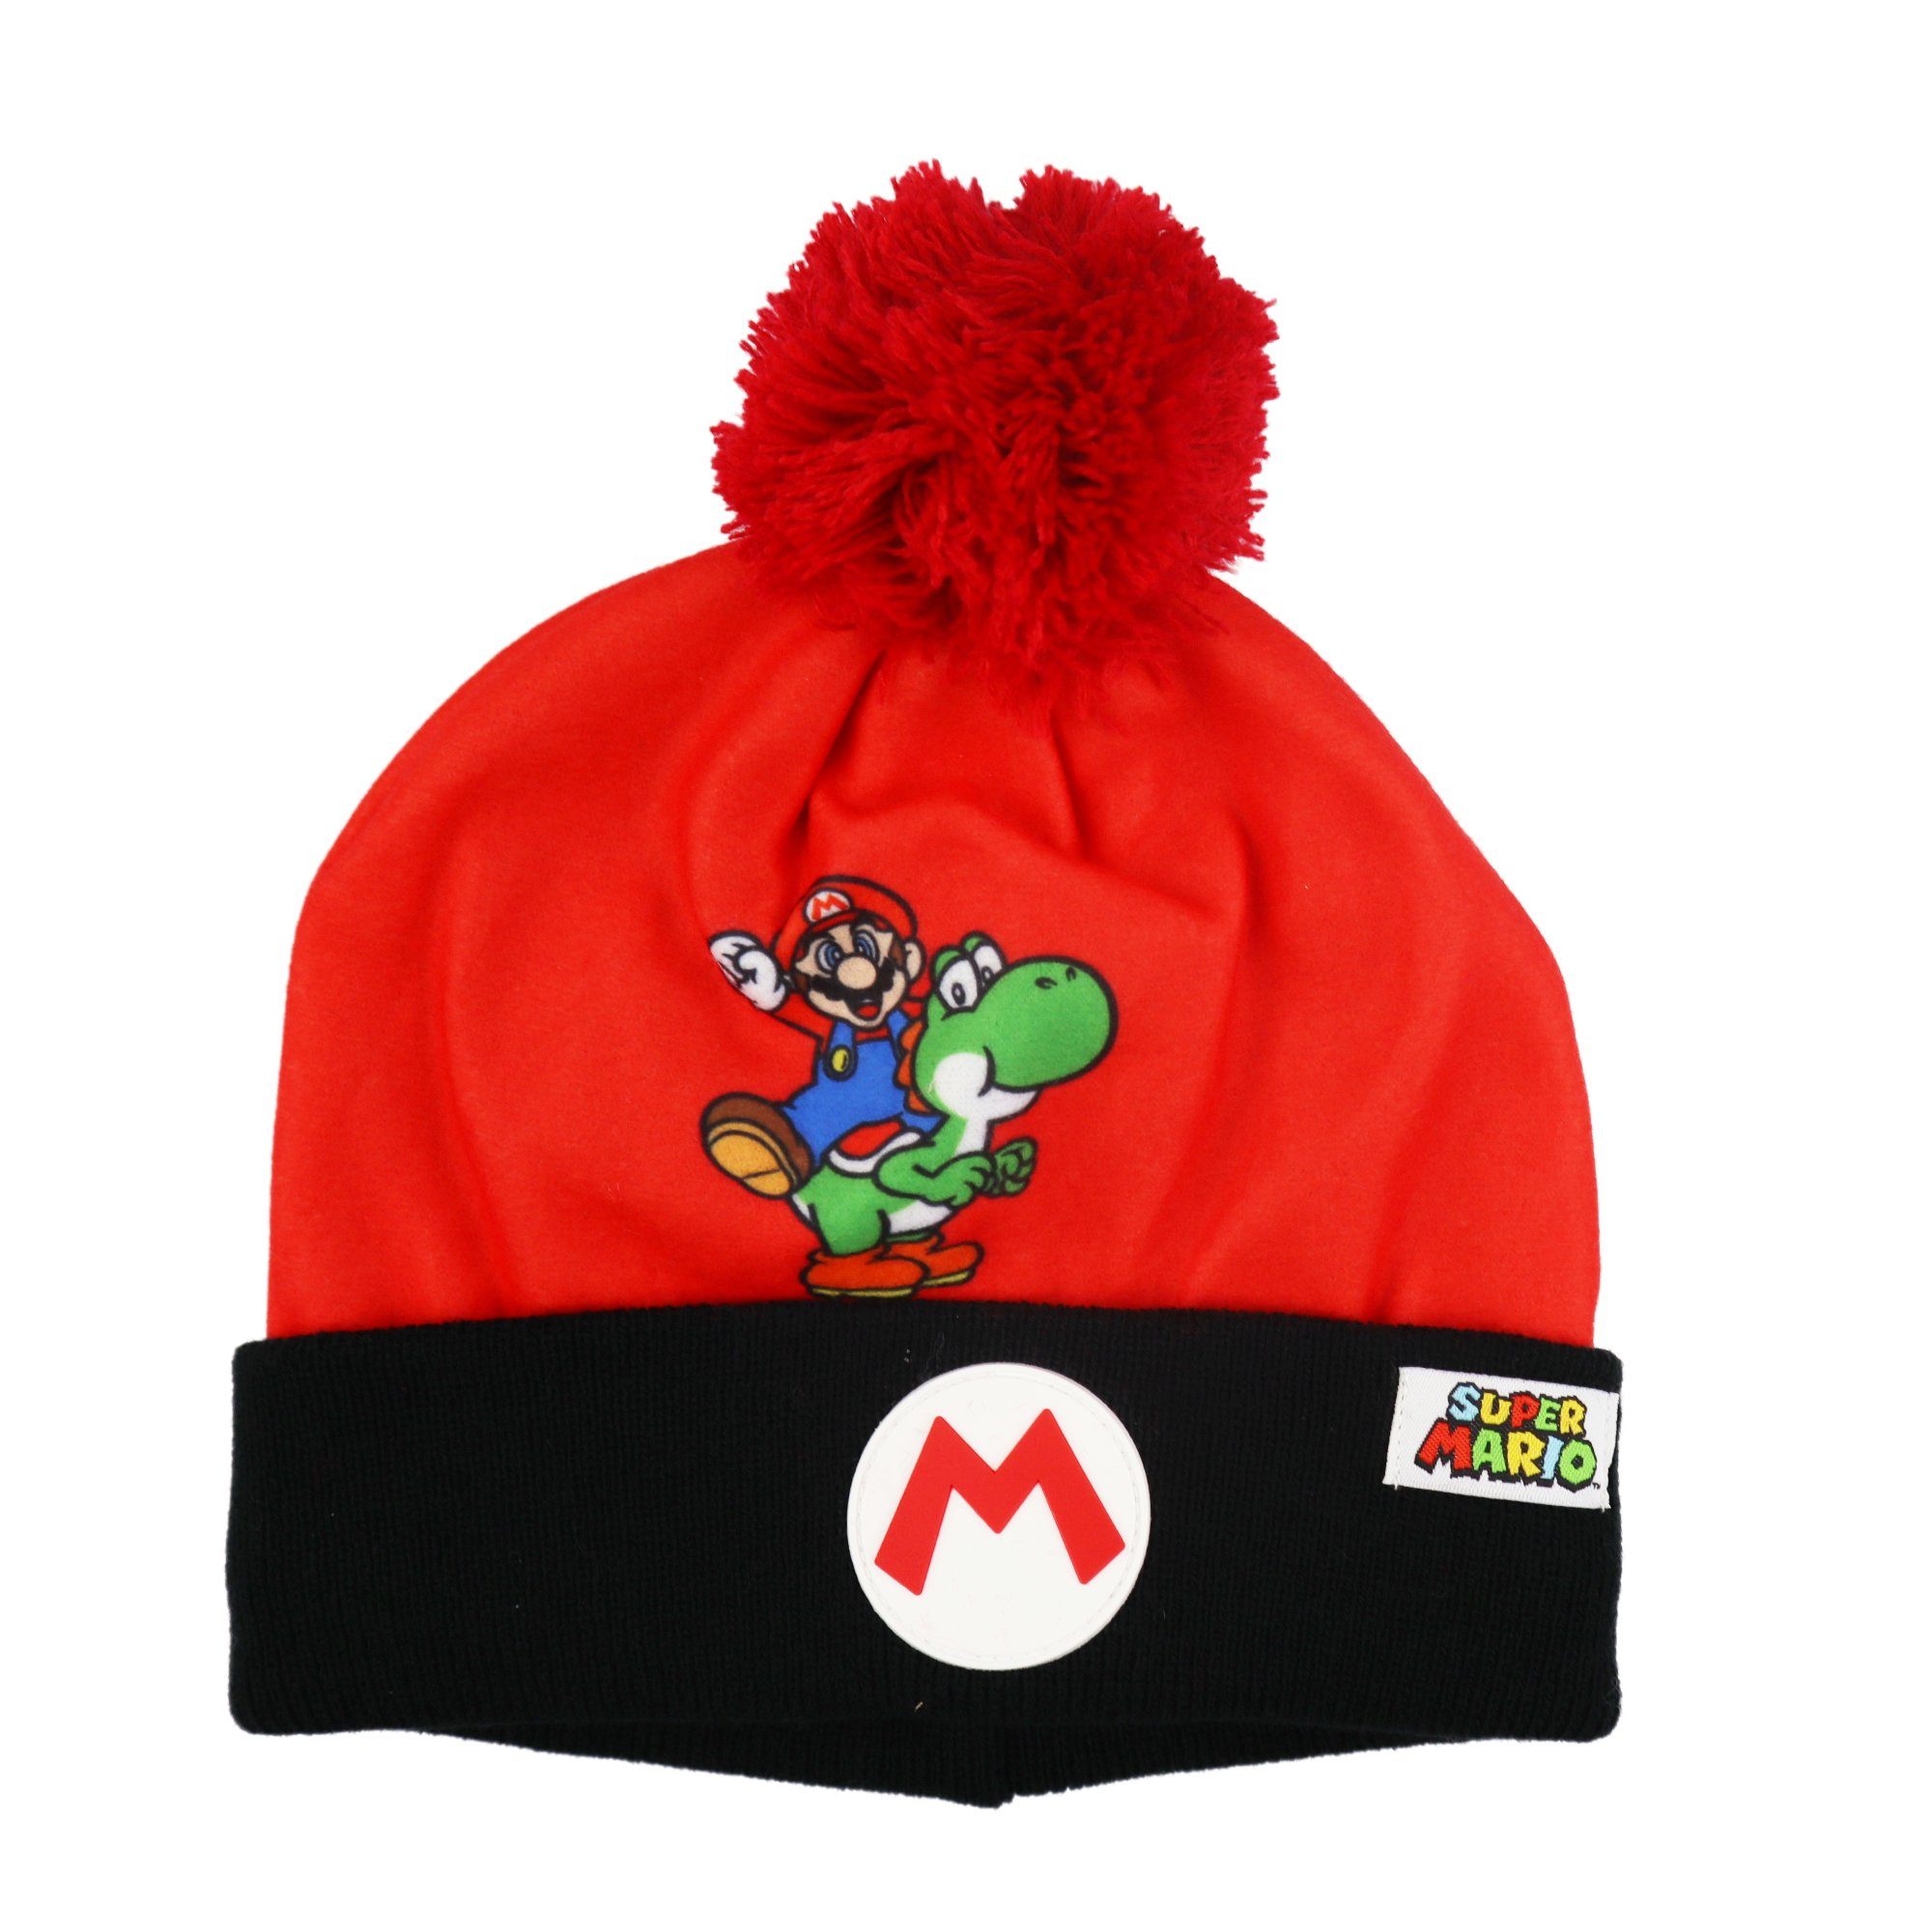 Super Mario Bommelmütze Super Mario Yoshi Kinder Winter Mütze Gr. 52 bis 54, Blau oder Rot